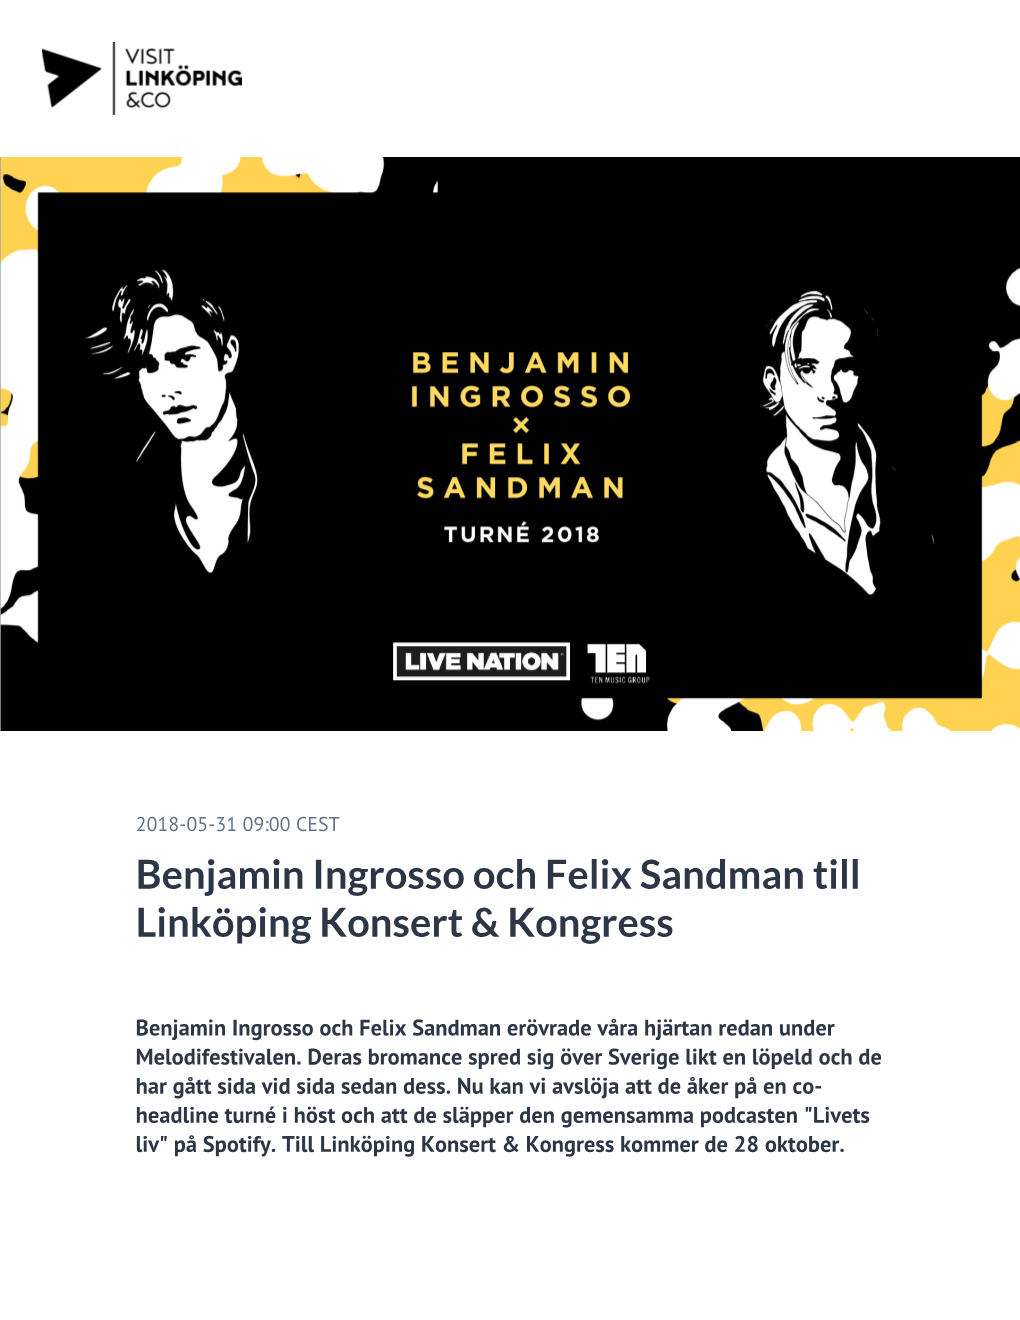 Benjamin Ingrosso Och Felix Sandman Till Linköping Konsert & Kongress